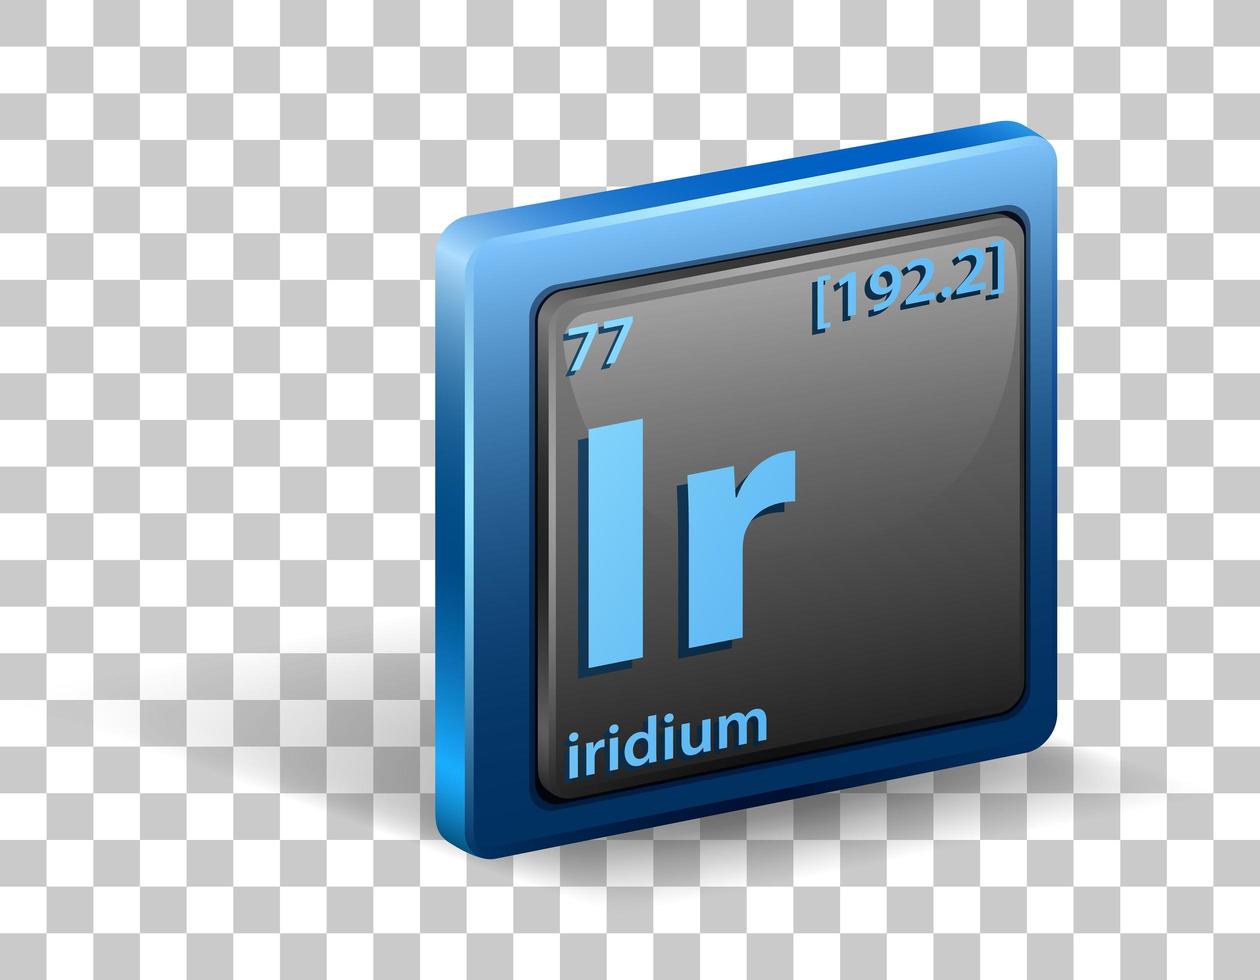 élément chimique iridium. symbole chimique avec numéro atomique et masse atomique. vecteur